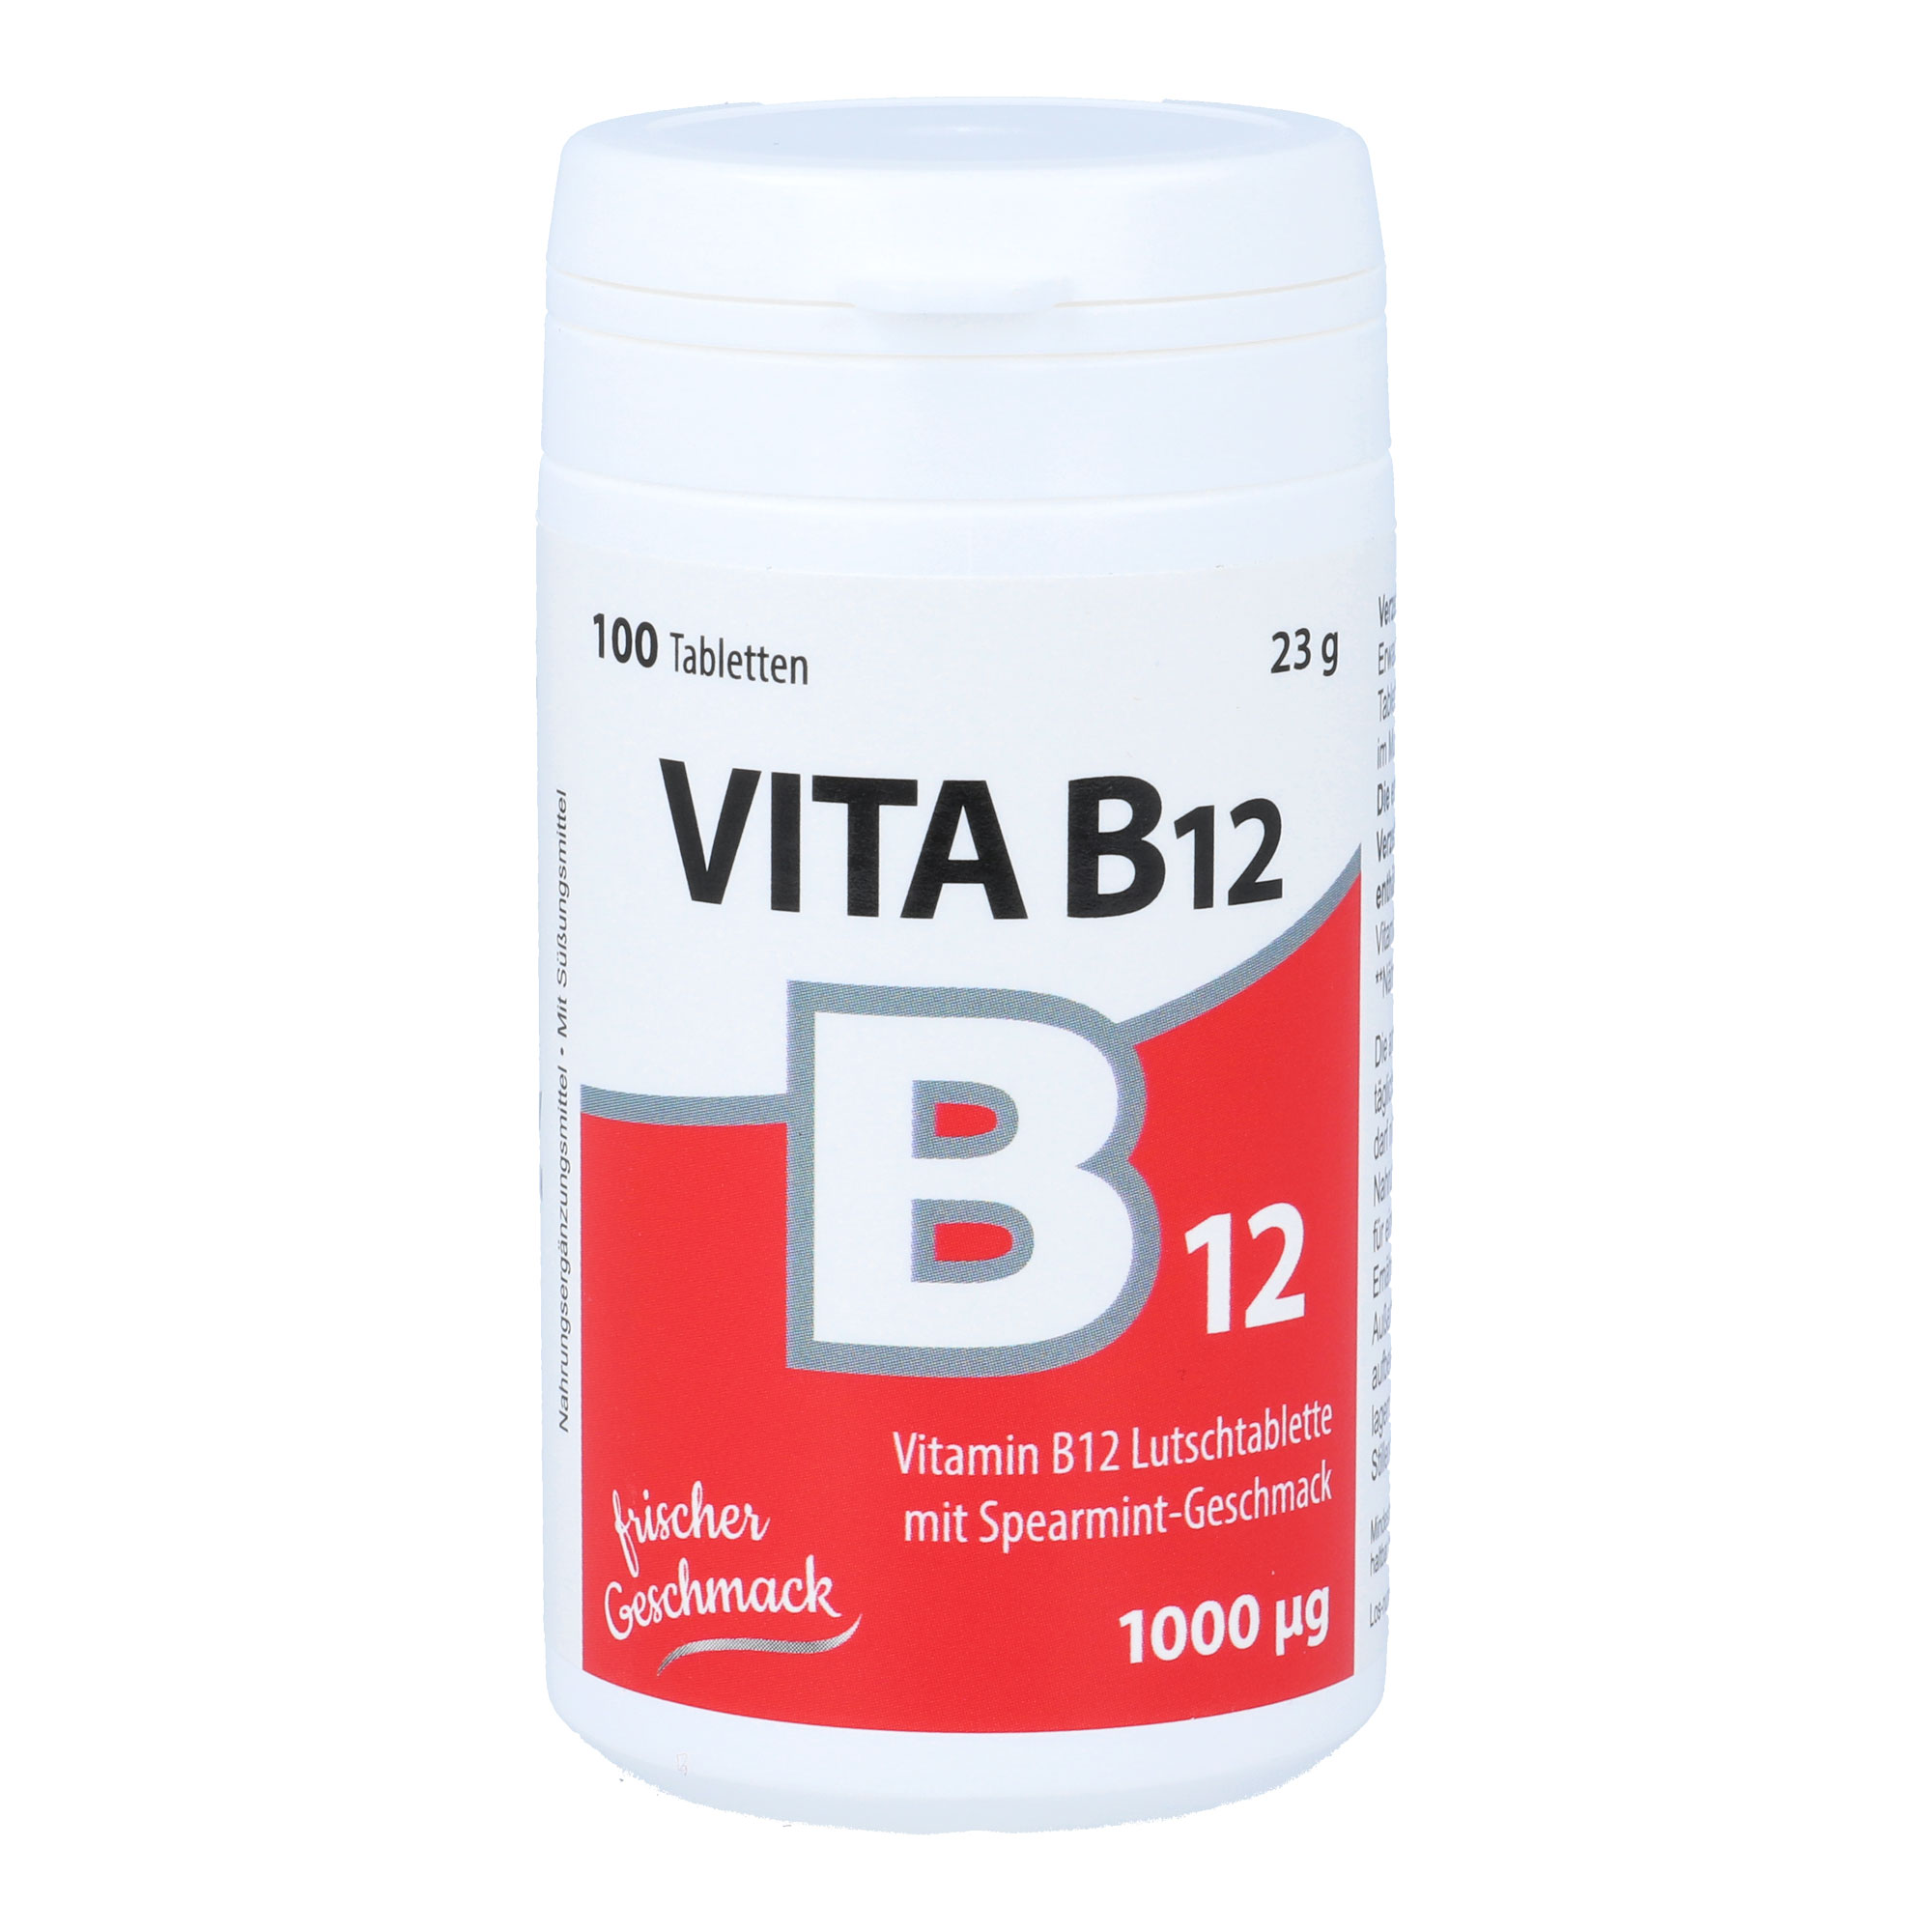 Nahrungsergänzungsmittel mit Vitamin B12. Mit frischem Minz-Geschmack.